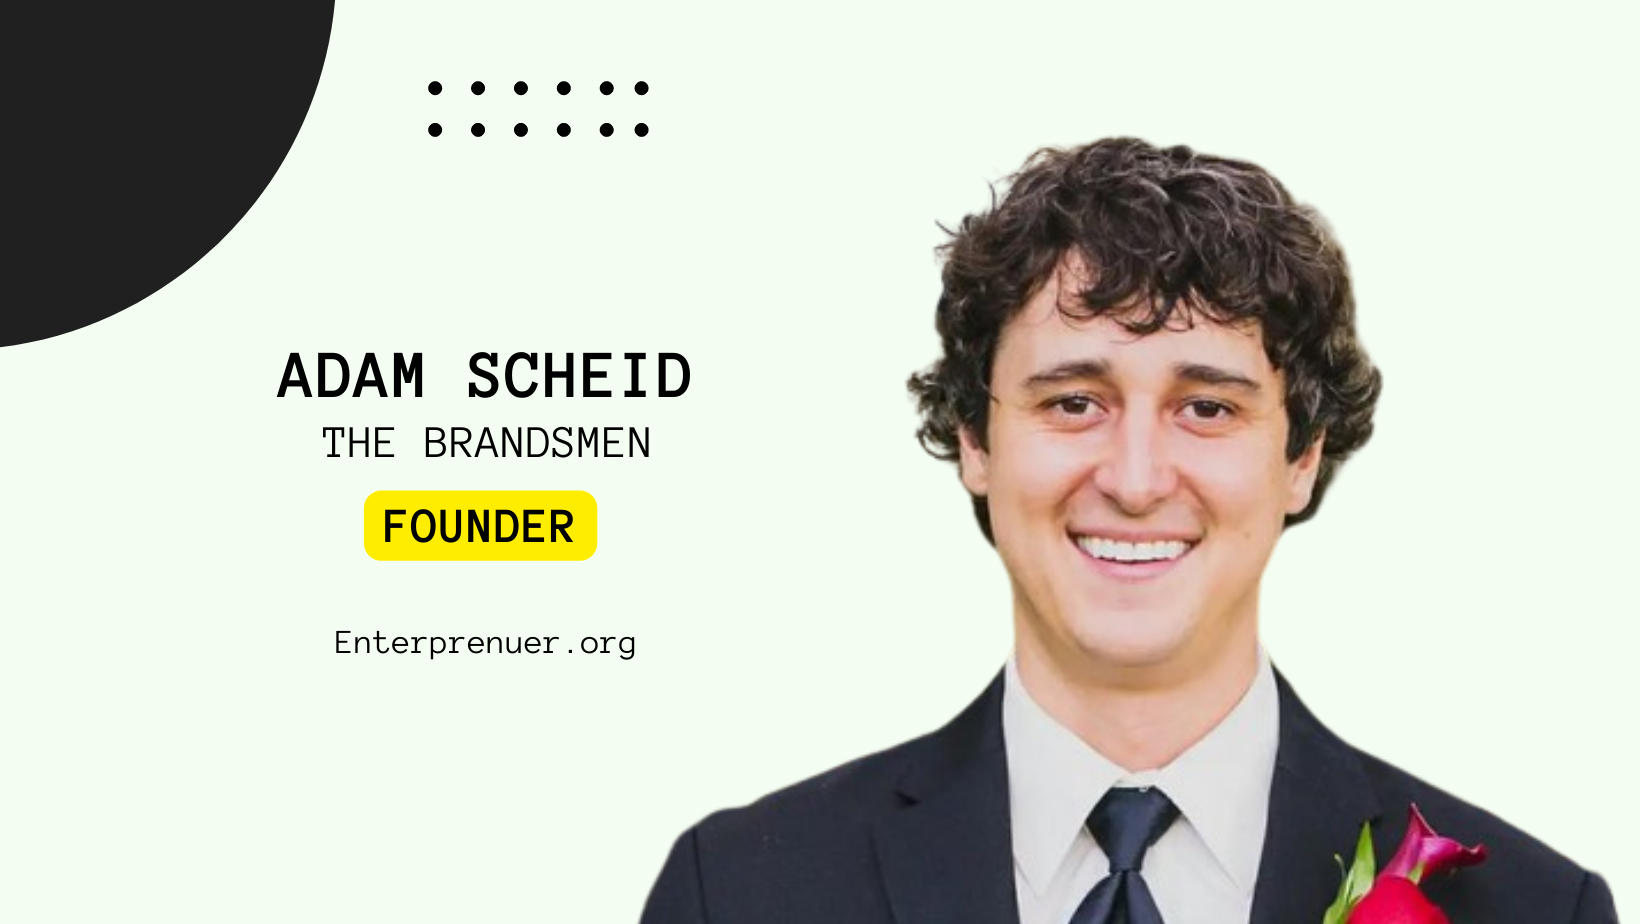 Adam Scheid Co-Founder of The Brandsmen